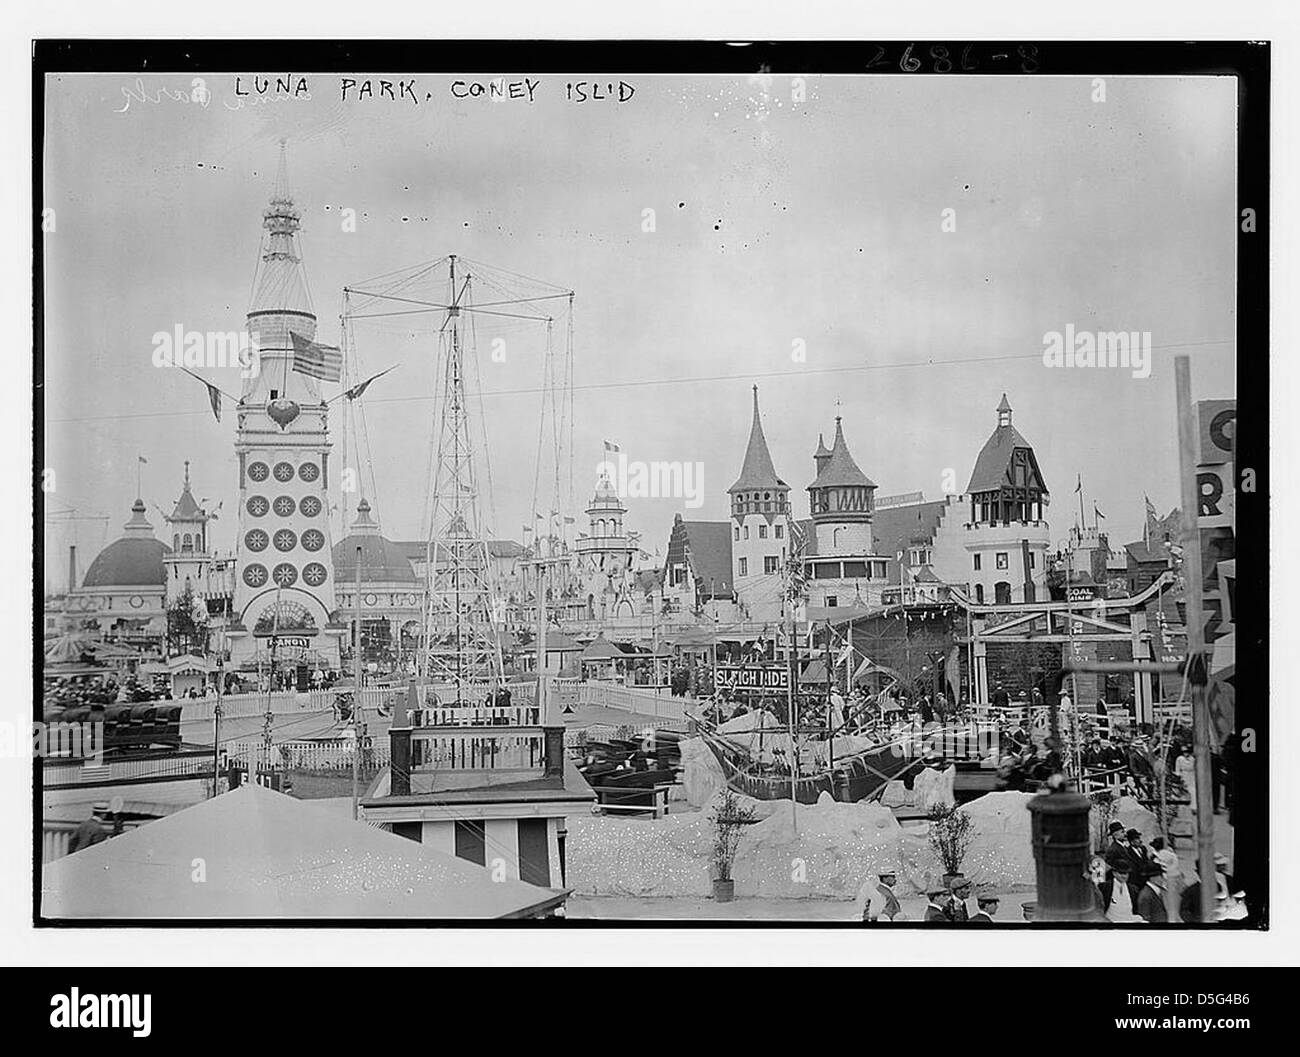 Luna Park, Coney Isl. (LOC) Stock Photo